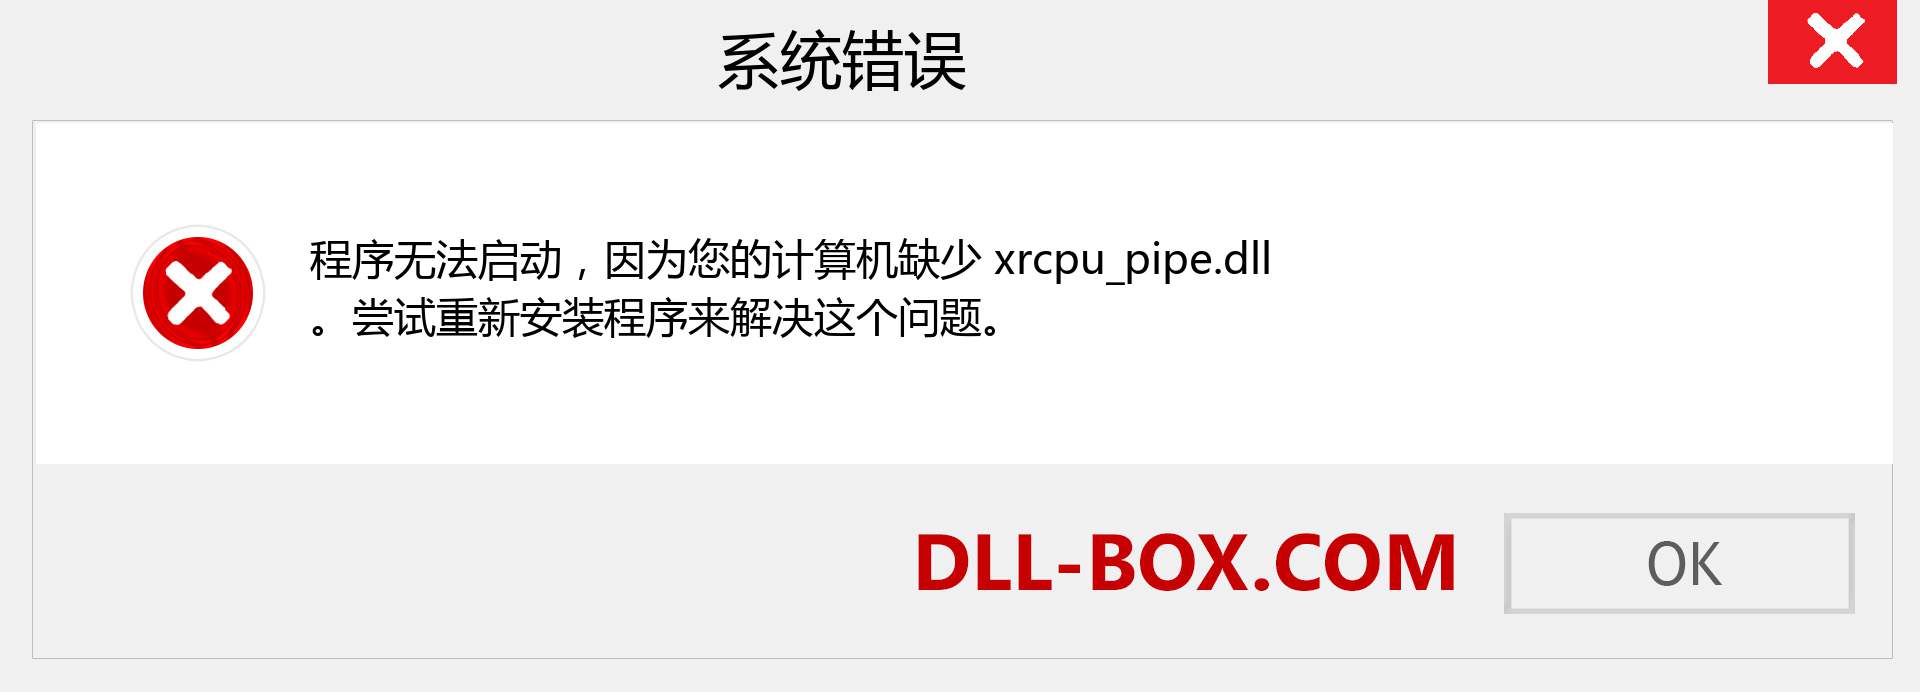 xrcpu_pipe.dll 文件丢失？。 适用于 Windows 7、8、10 的下载 - 修复 Windows、照片、图像上的 xrcpu_pipe dll 丢失错误